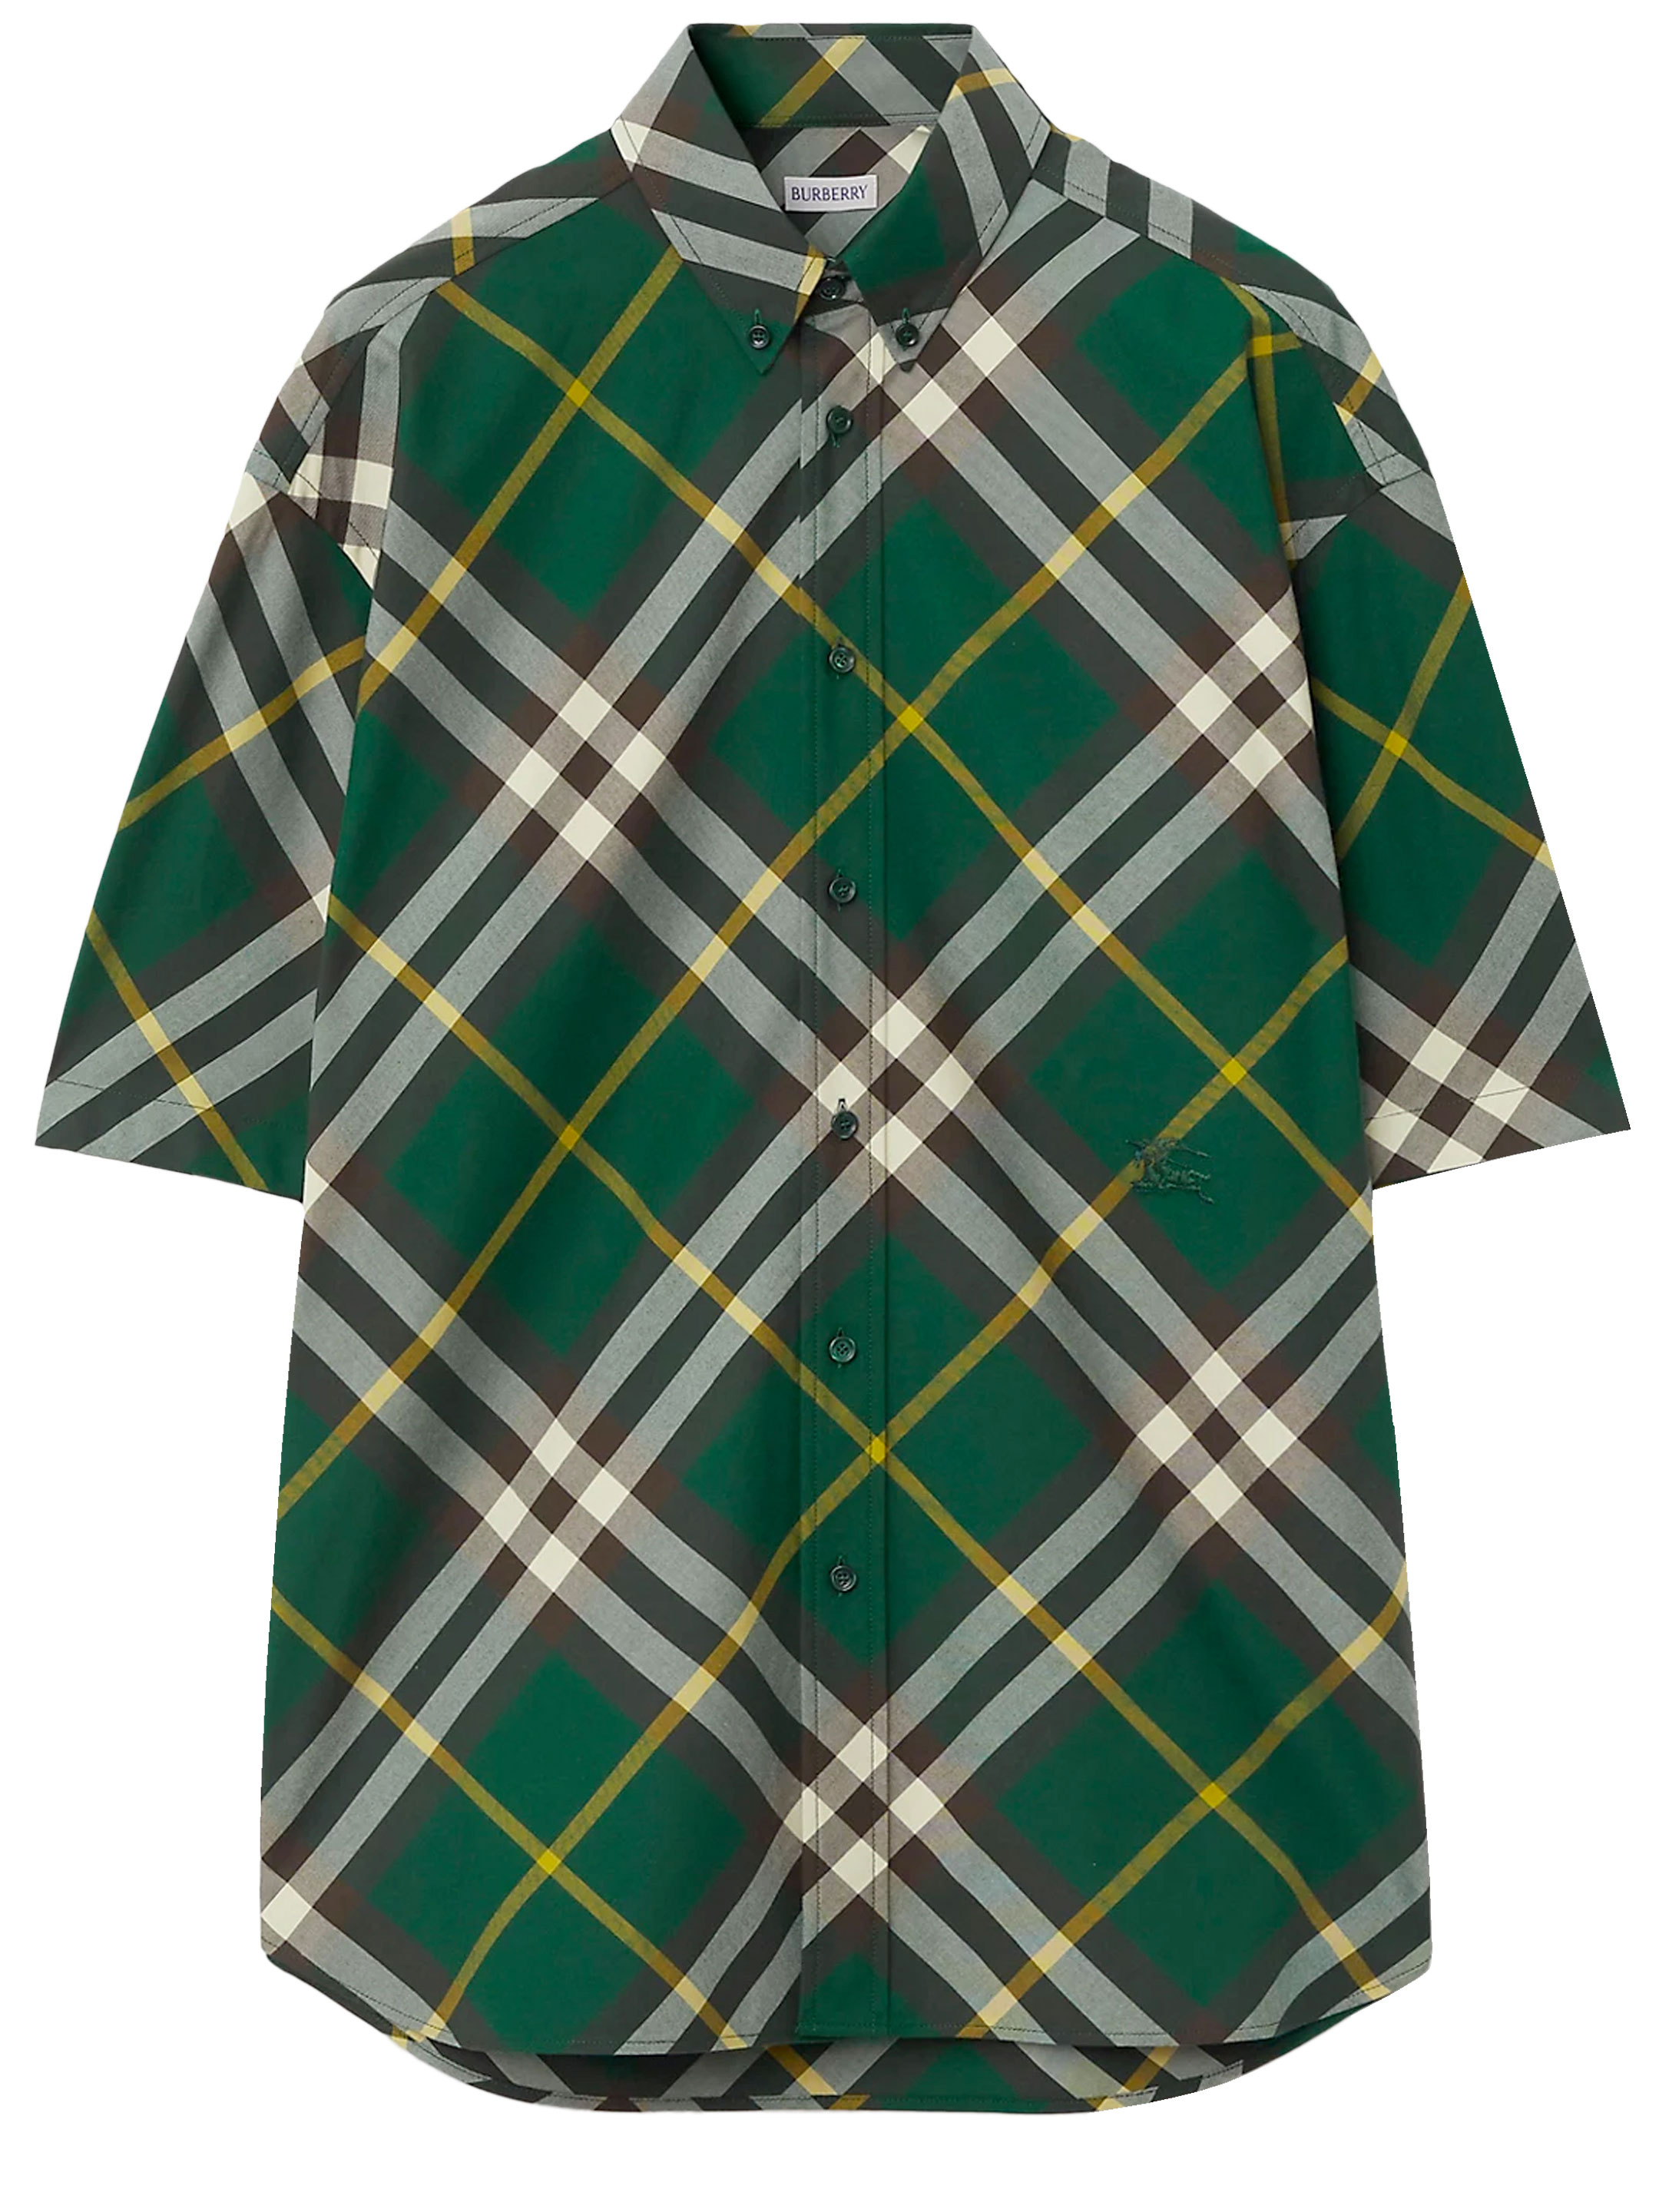 Рубашка Burberry Check cotton, зеленый рубашка burberry check cotton бежевый